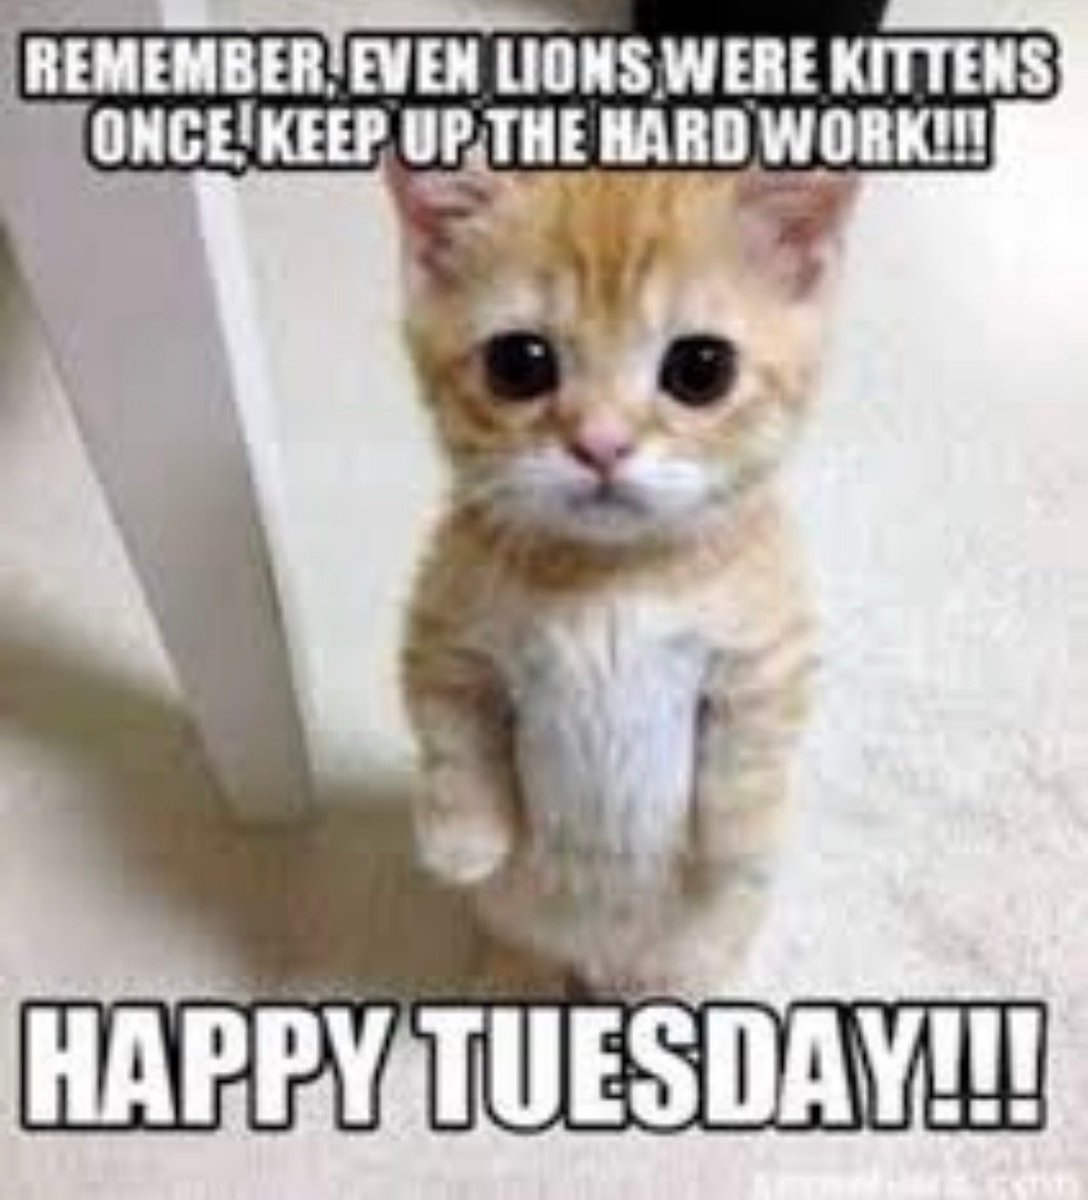 Happy Tuesday! 
#Tuesdays #tuesdaymood